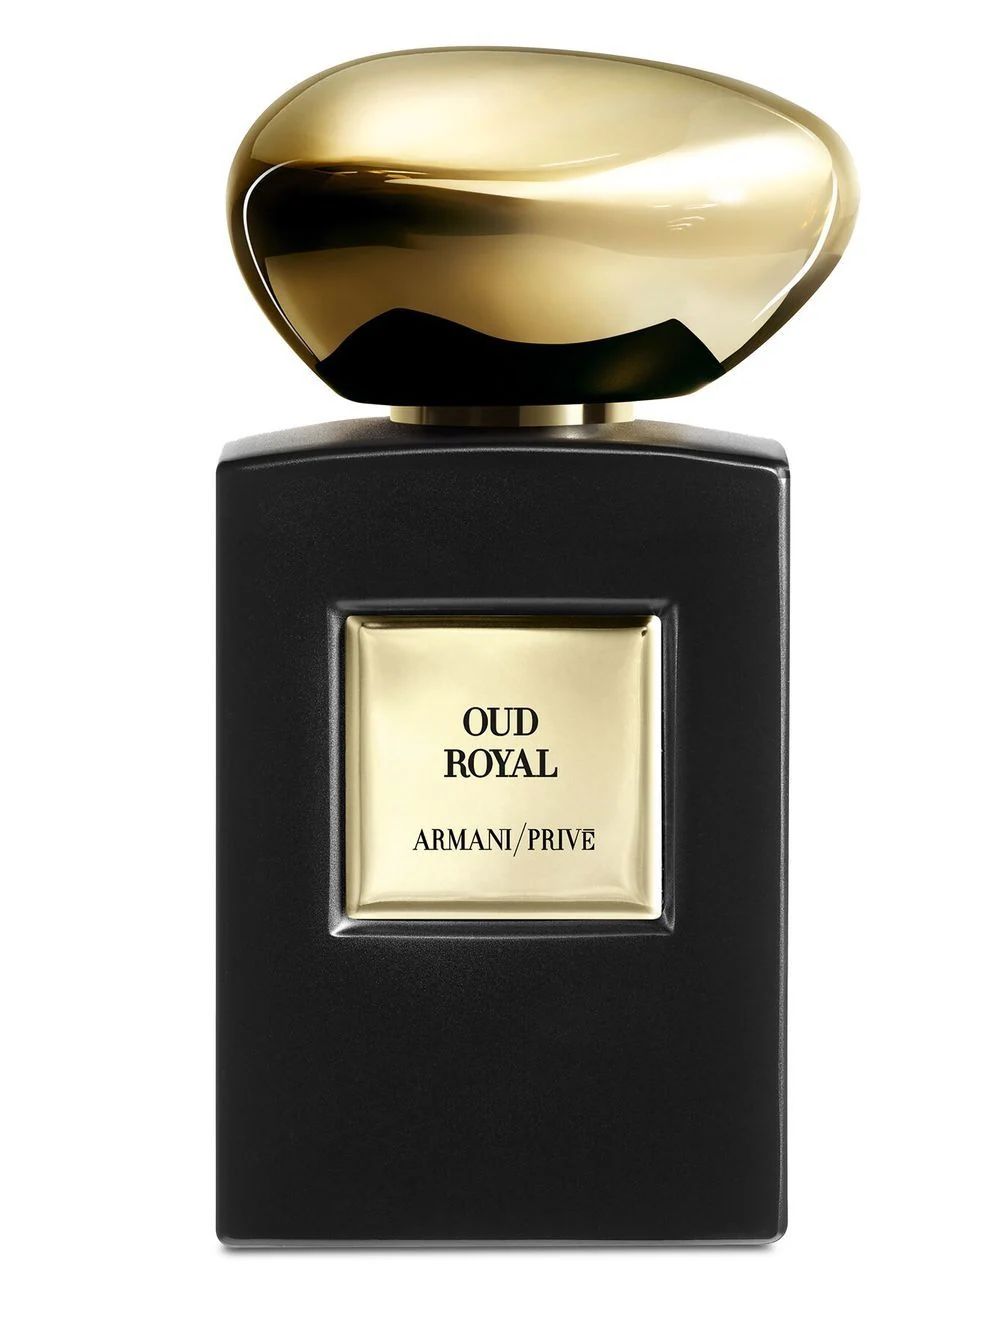 Armani Privé Oud Royal eau de parfum | Farfetch Global